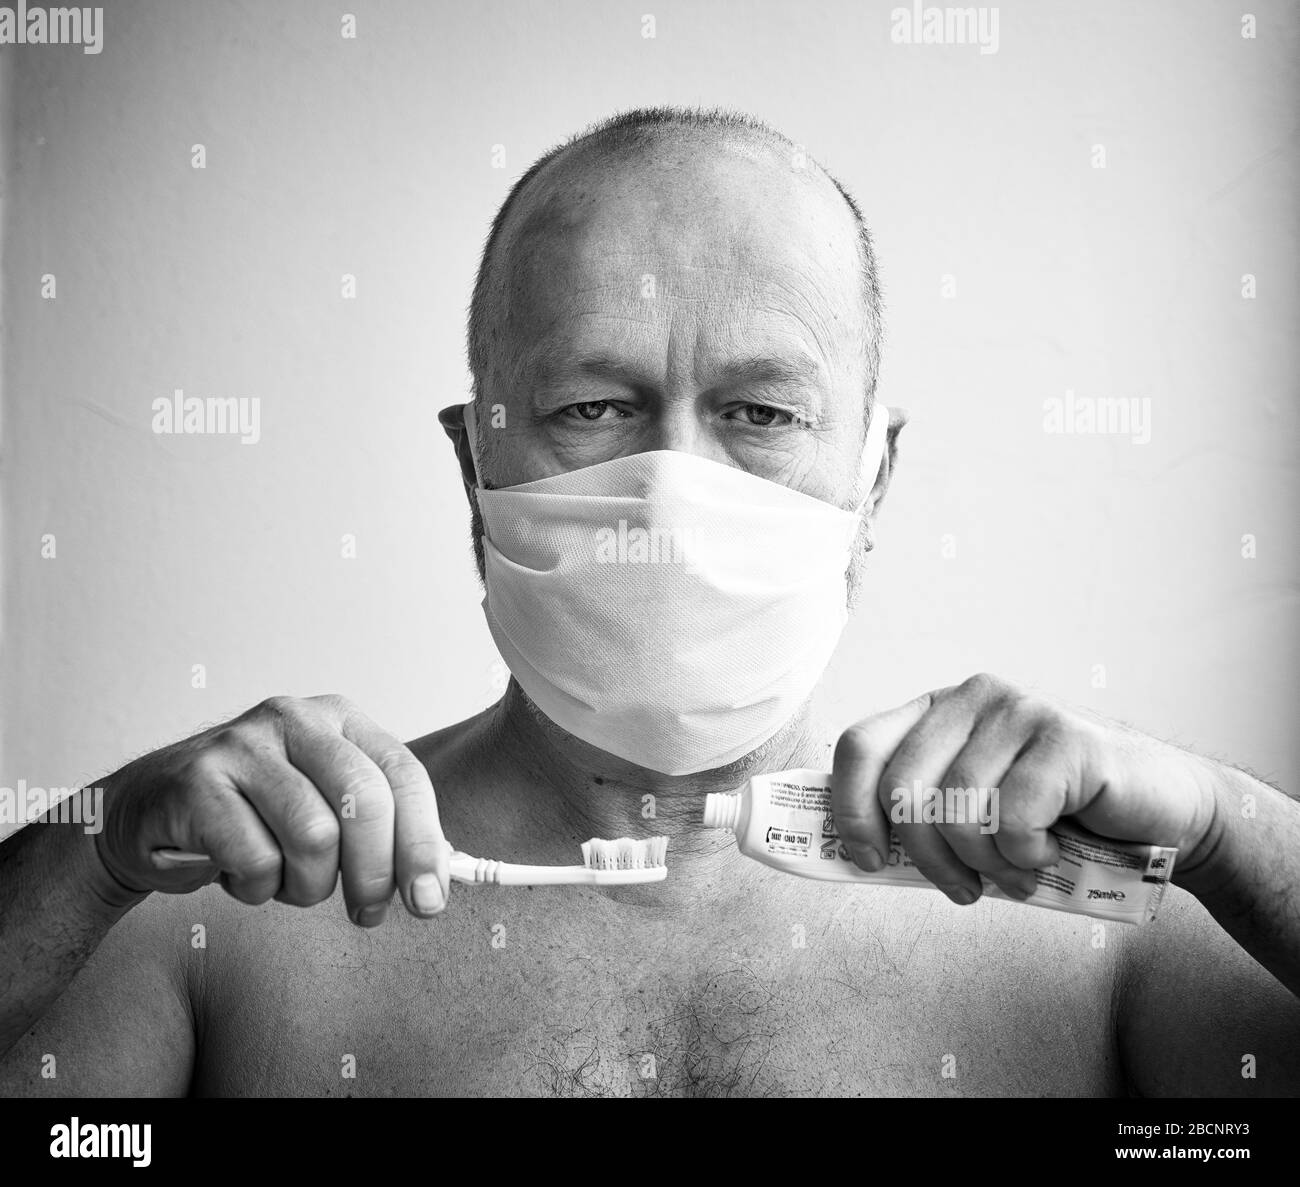 un homme brosse ses dents avec un masque de protection pendant la période du coronavirus Banque D'Images